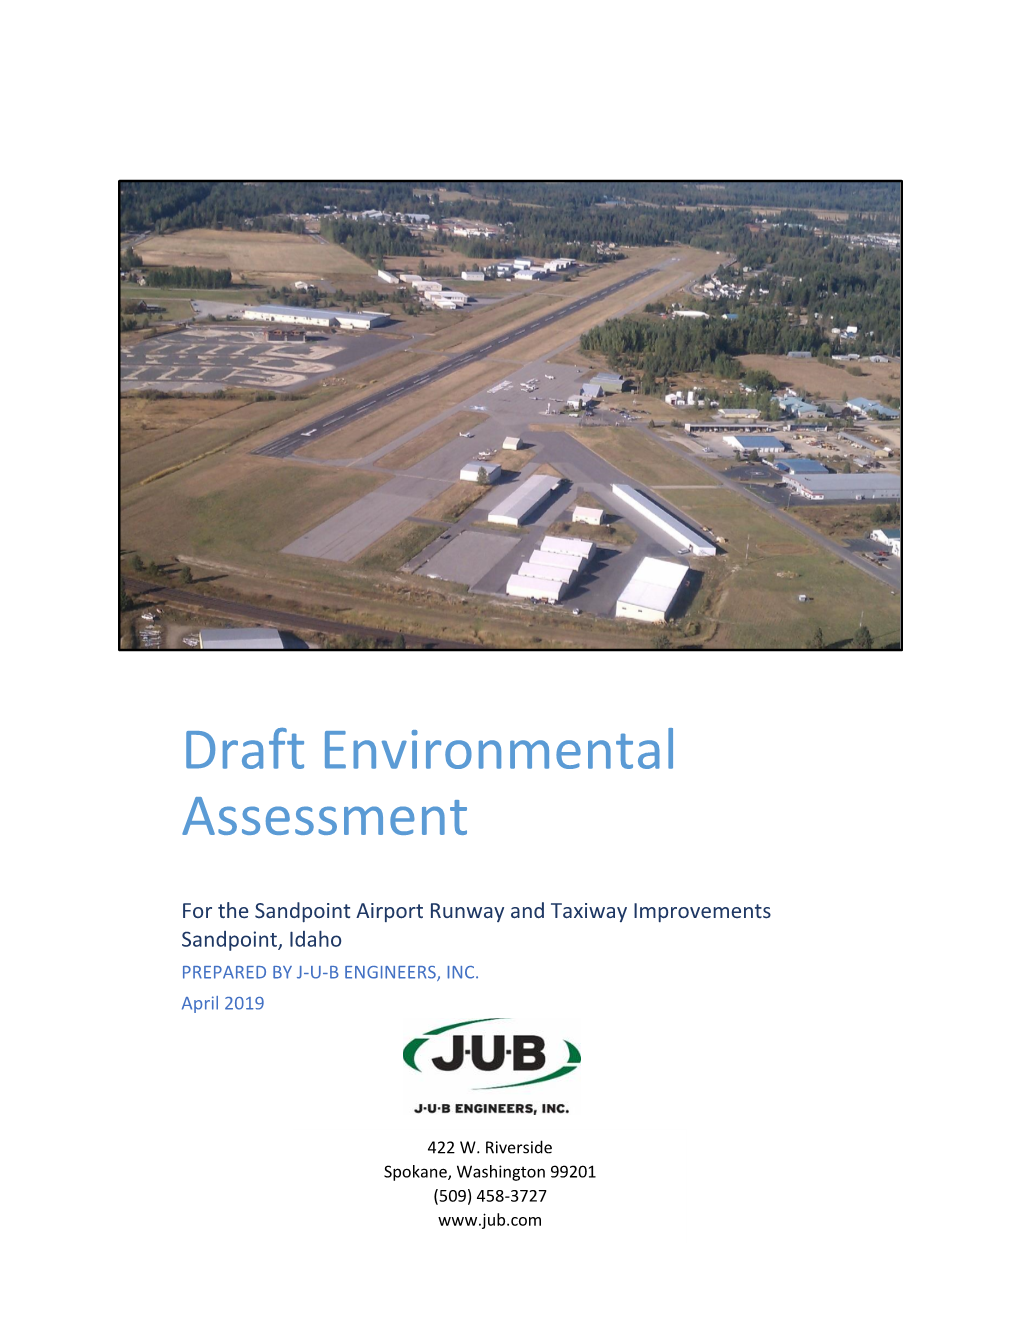 Draft Environmental Assessment